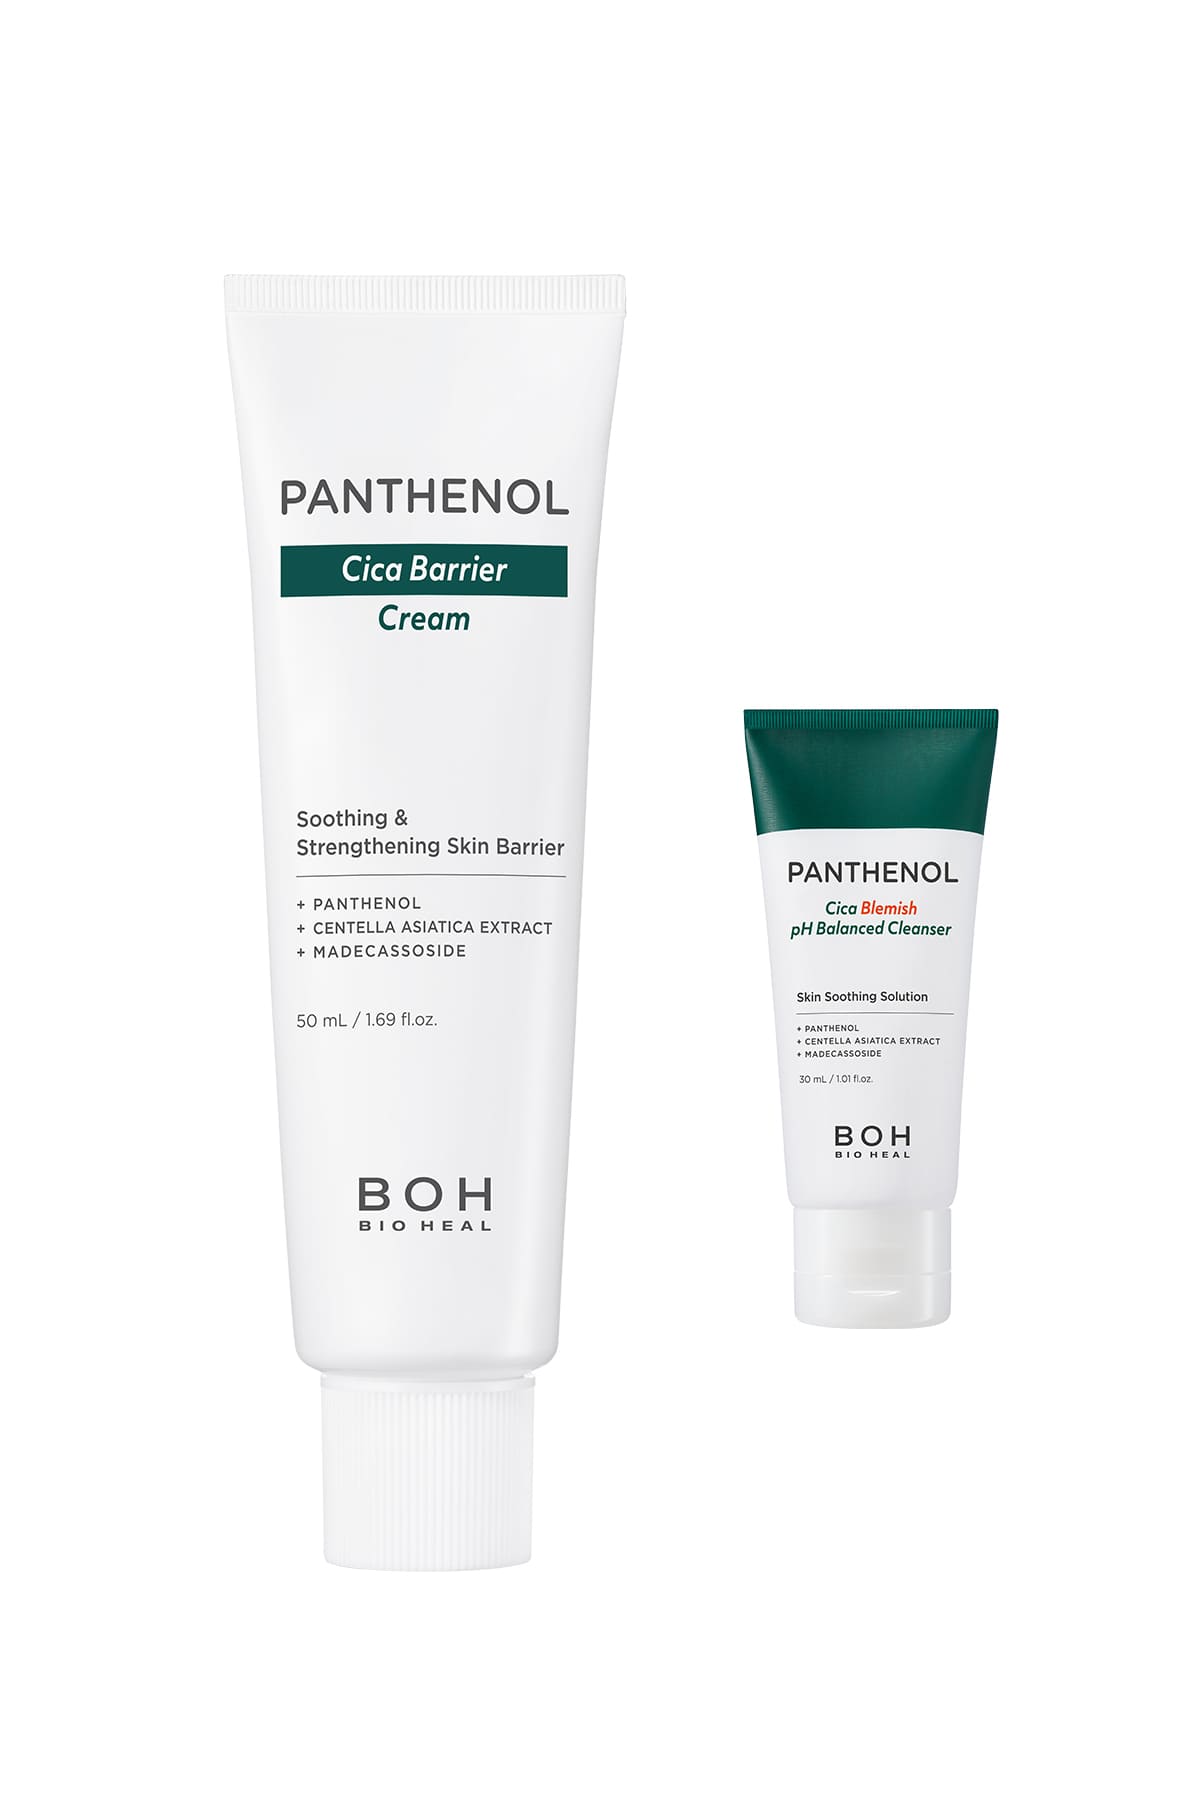 Bioheal BOH Panthenol Cica Barrier Cream 50ml (+ Cleanser 30 ml) - Güçlendirici Pantenol & Cica Krem (Temizleyici Hediyeli)